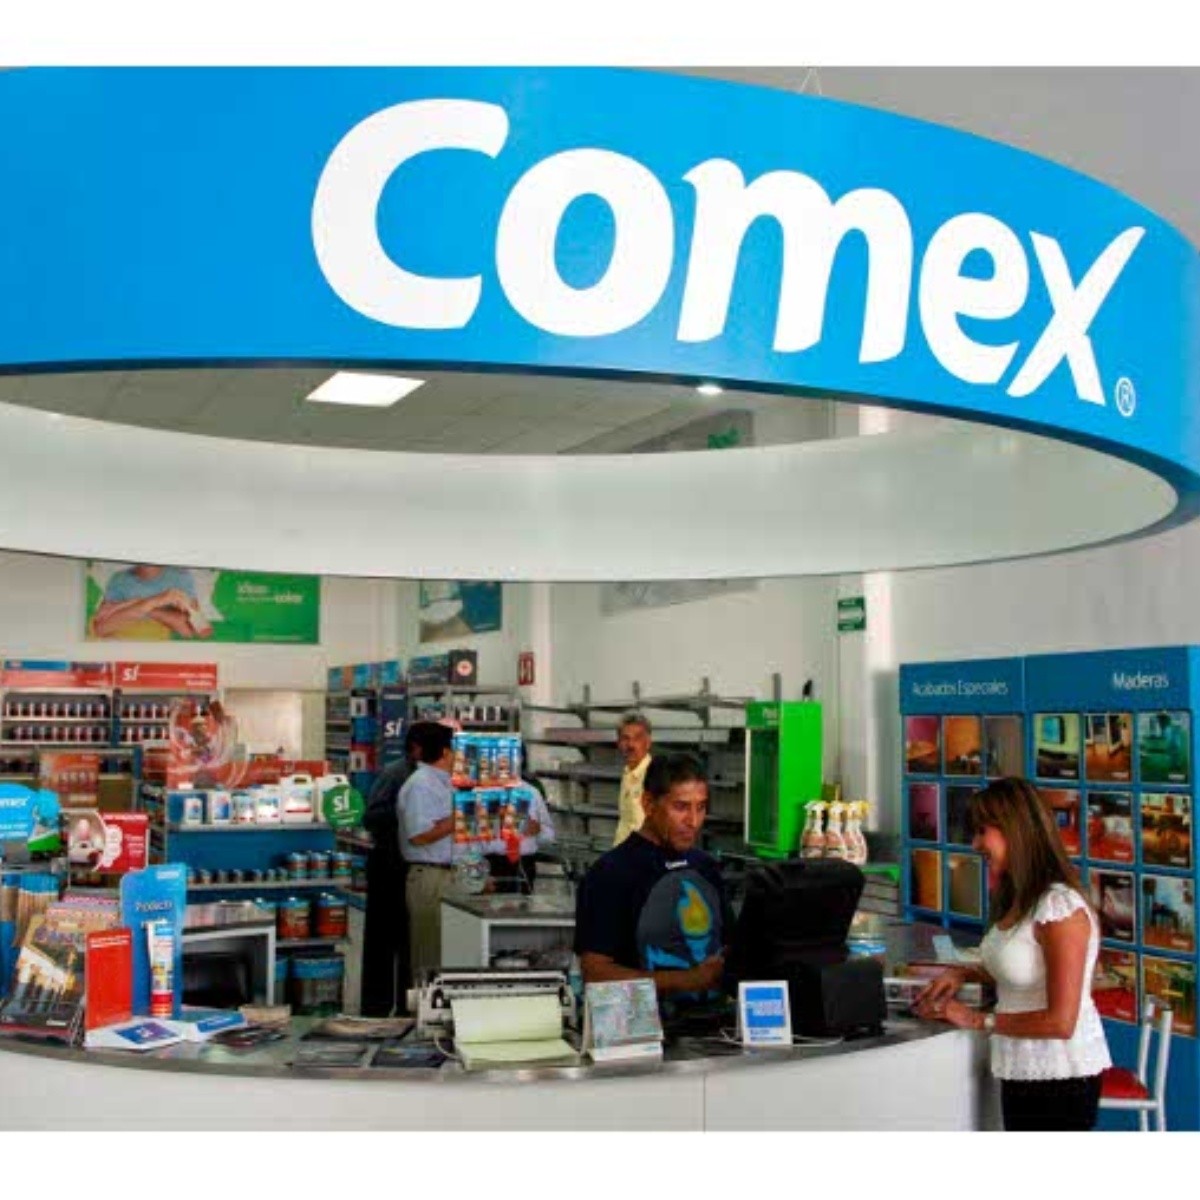 Comex, nuevo patrocinador de los Panamericanos | El Informador